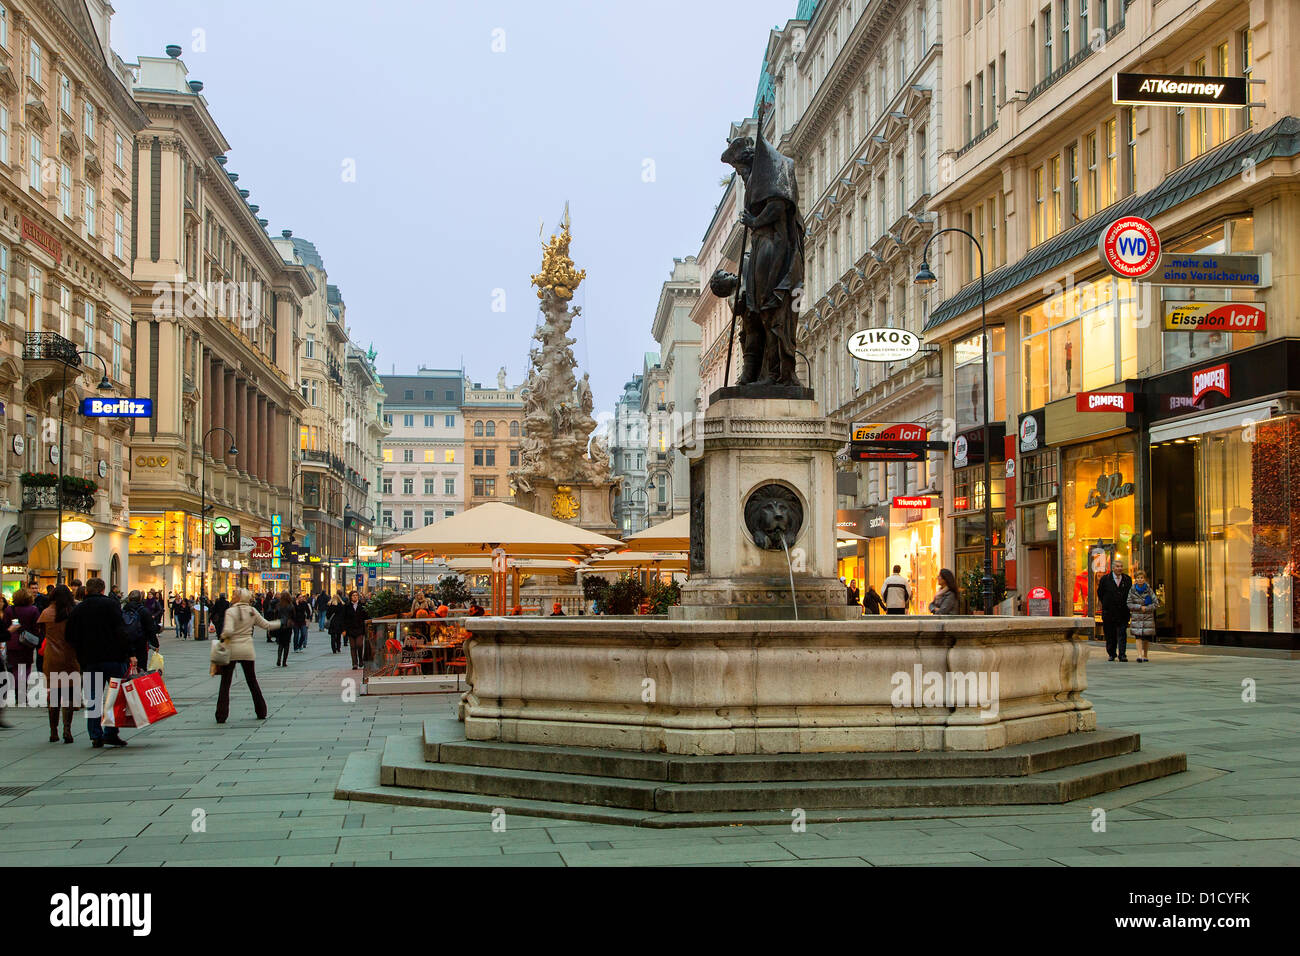 Austria, Square in Vienna Stock Photo